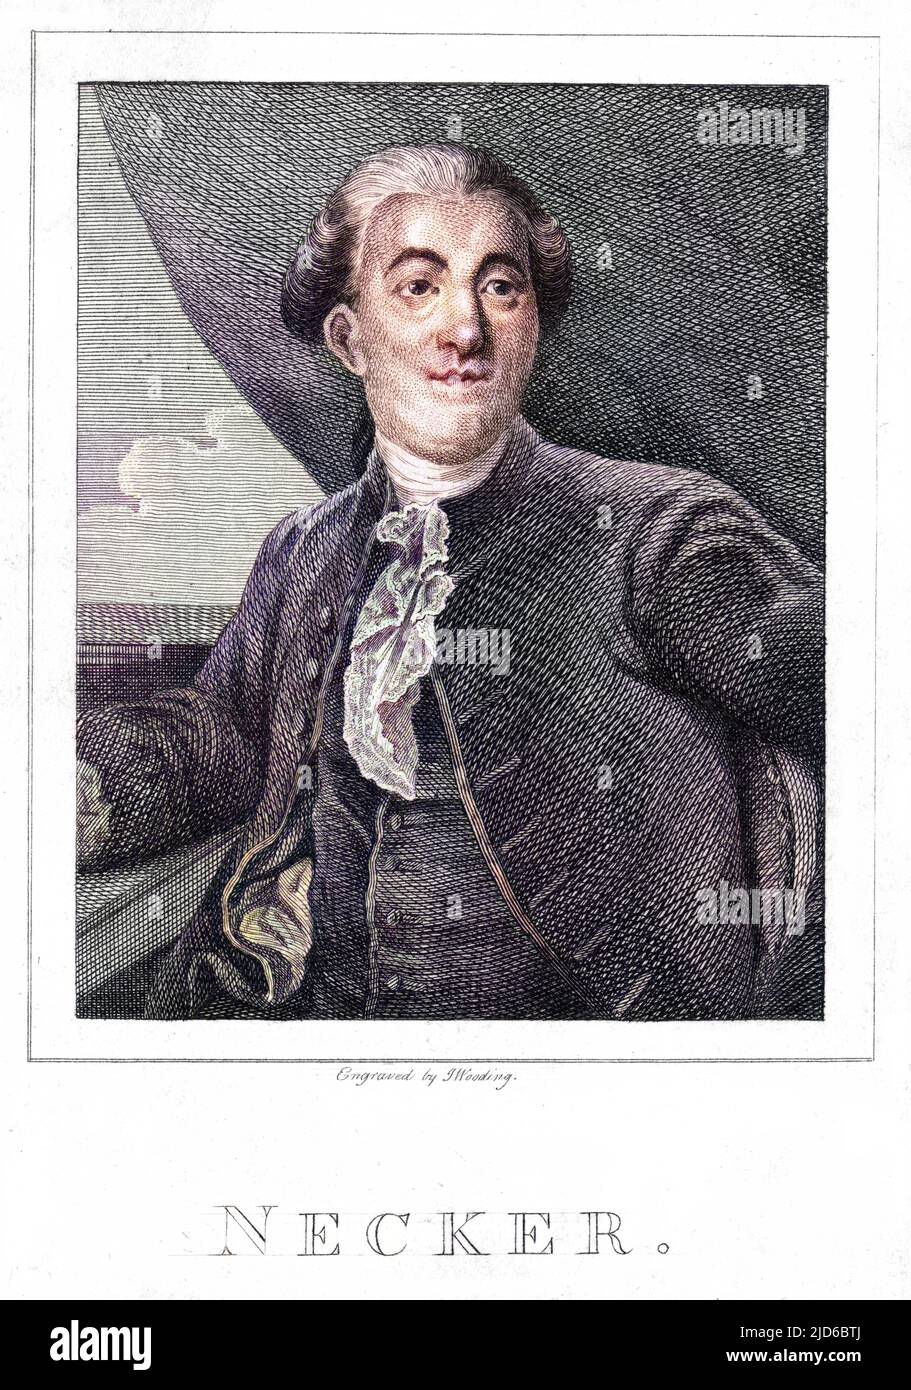 JACQUES NECKER (1732 - 1804), in der Schweiz geborener französischer Finanzmann und Staatsmann, schilderte 1789 das Jahr der Revolution, das seine Finanzreformen nicht stoppen konnten. Kolorierte Version von : 10167177 Stockfoto